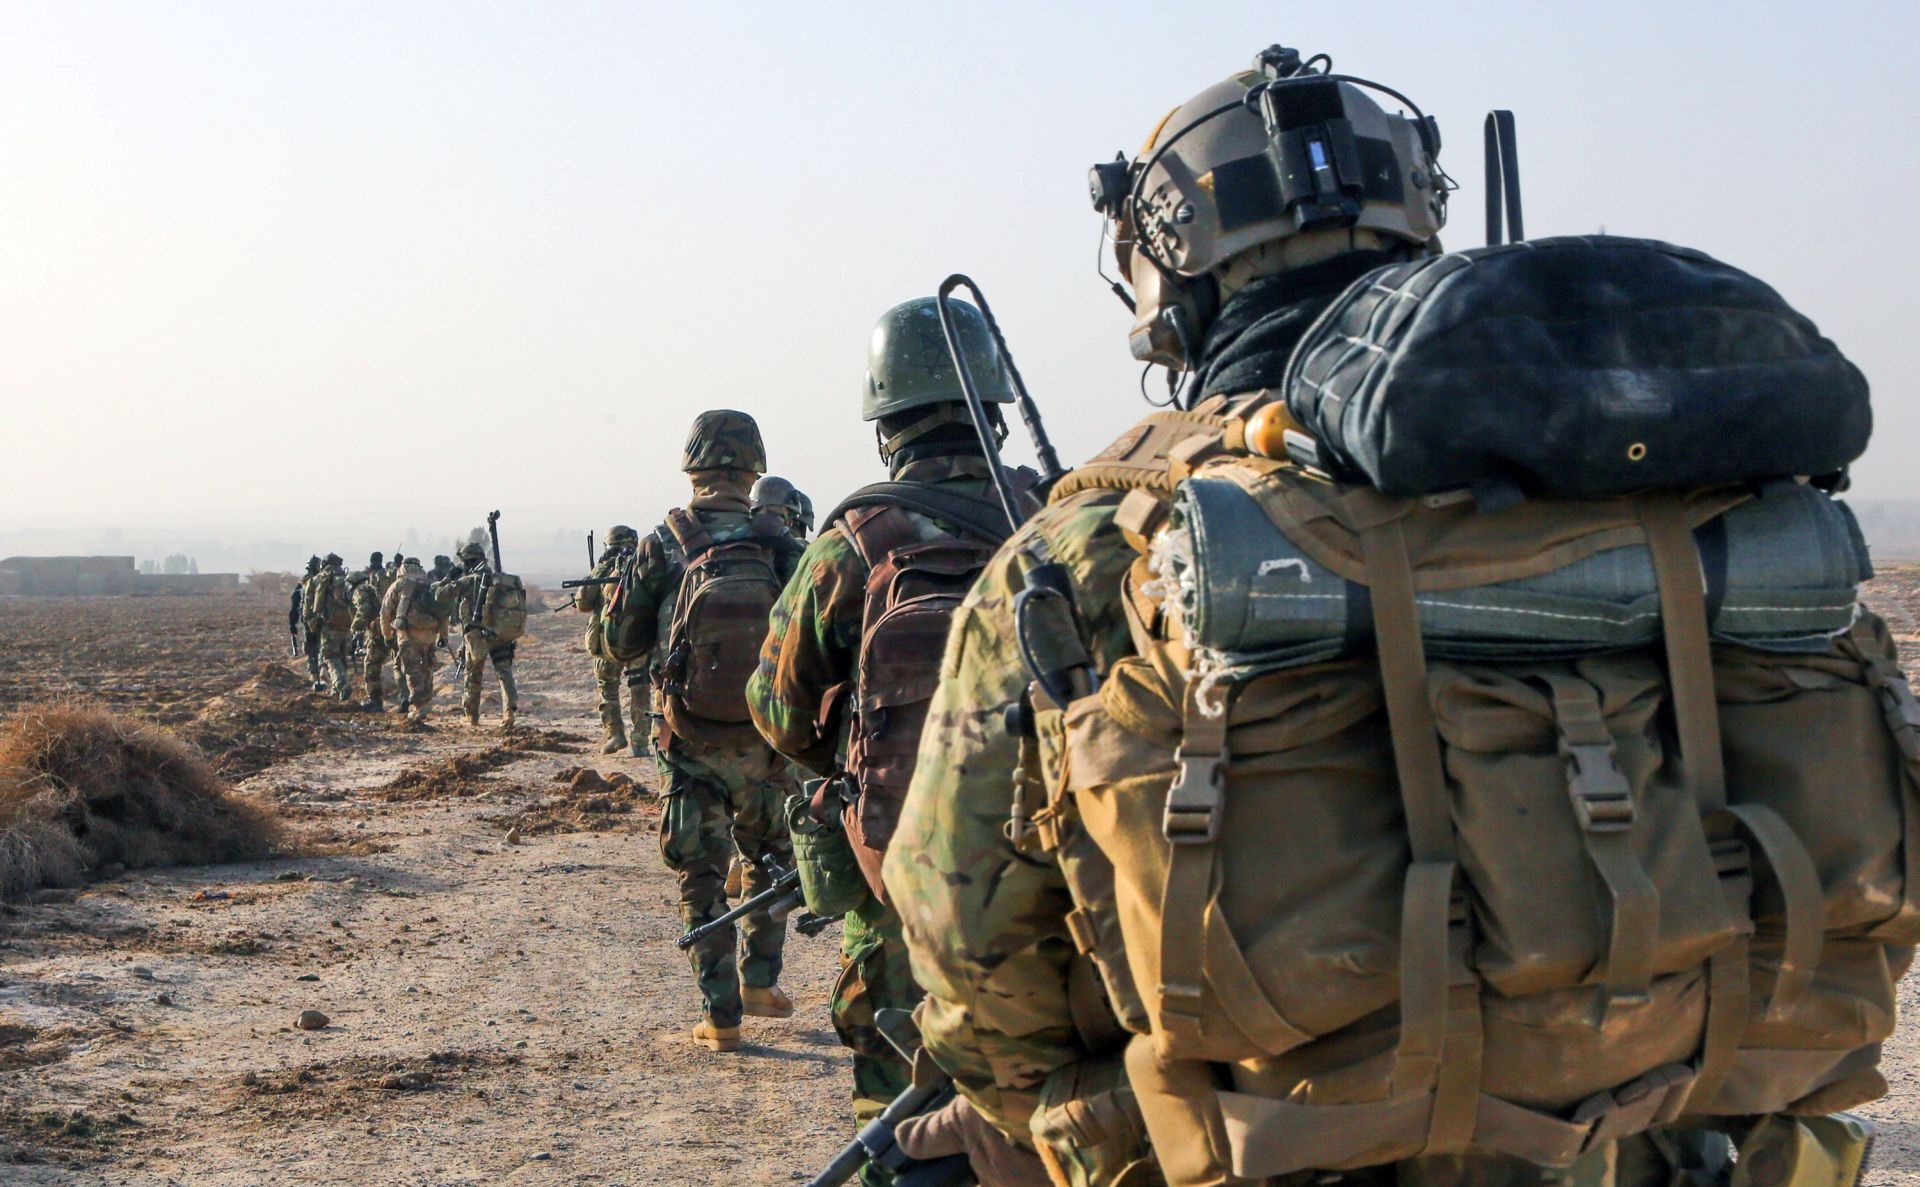 Σοκ: Αμερικανικές μυστικές στρατιωτικές βάσεις στην Συρία αποκαλύφθηκαν από τα fitness trackers!